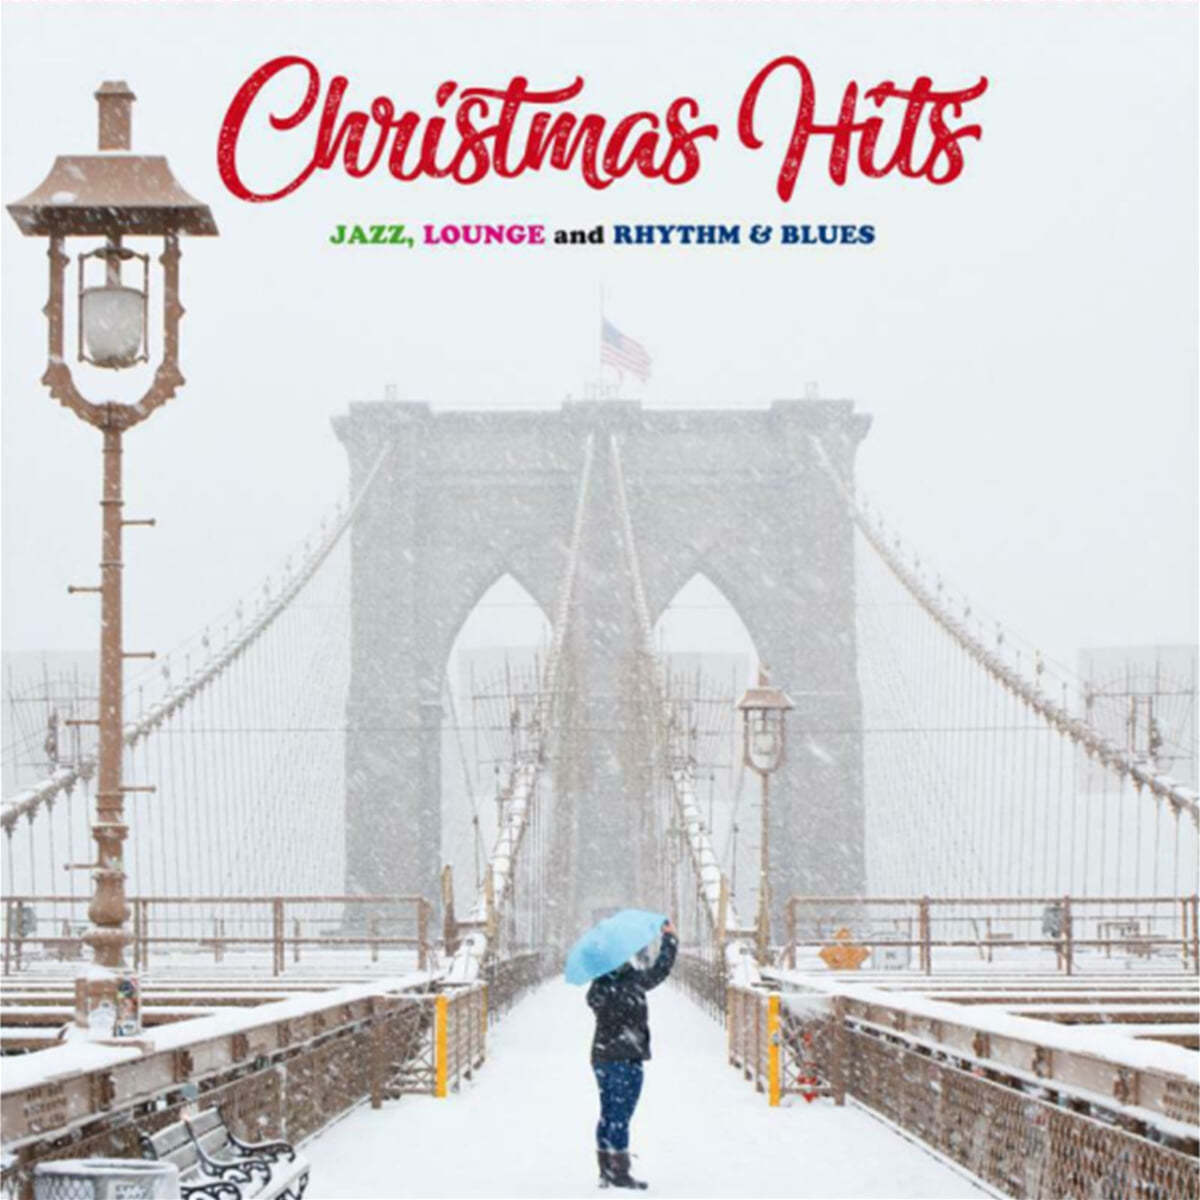 크리스마스 히트곡 모음집 - 재즈, 라운지 뮤직, 리듬 앤 블루스 (Christmas Hits: Jazz Lounge &amp; Rhythm &amp; Blues) [화이트 컬러 LP]